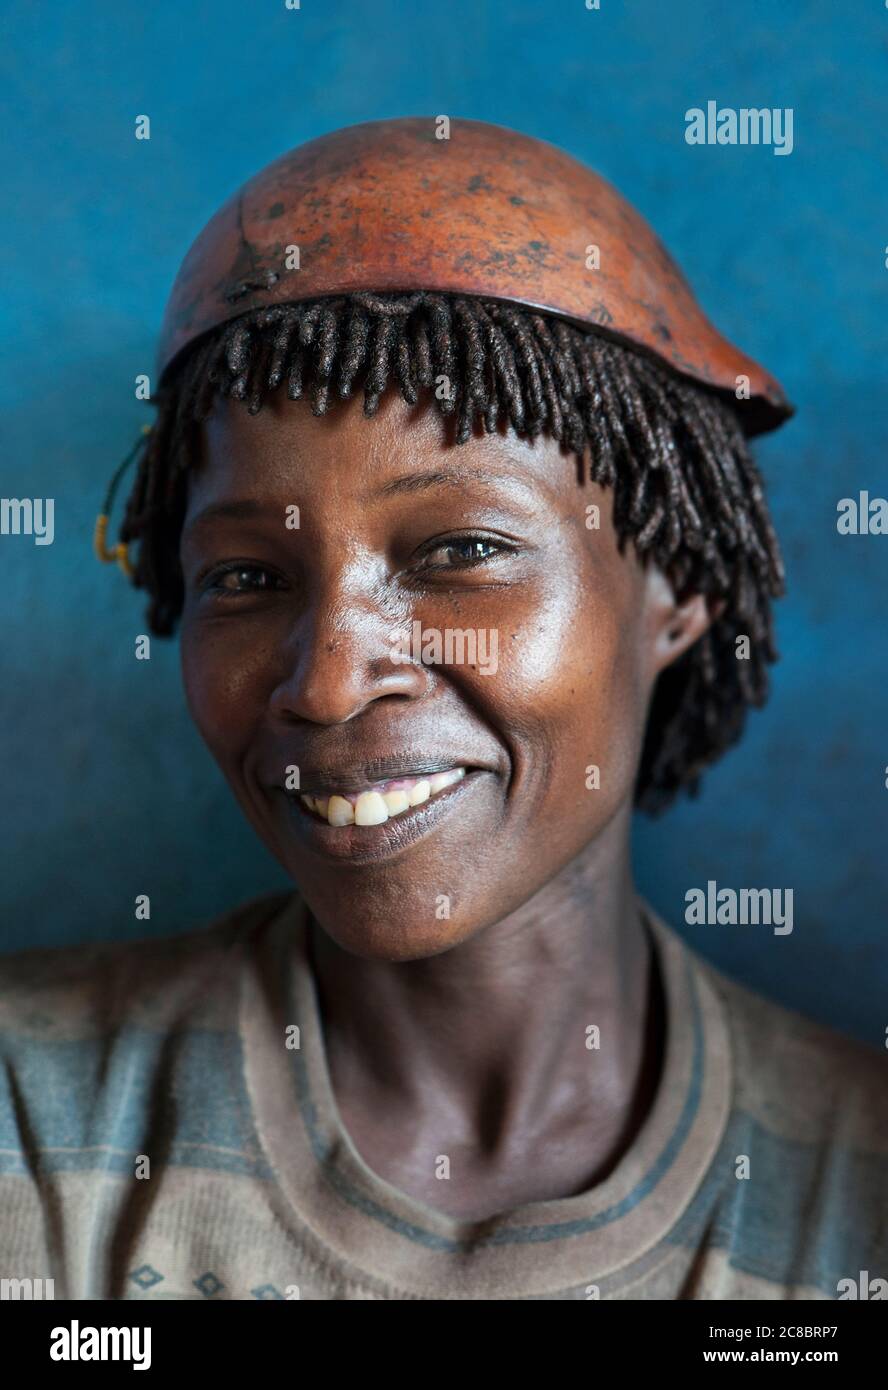 Dimeka- Éthiopie -Afrique, janvier 03. 2014: Jeune femme Hamer au marché de Dimeka en Ethiopie, Afrique Banque D'Images